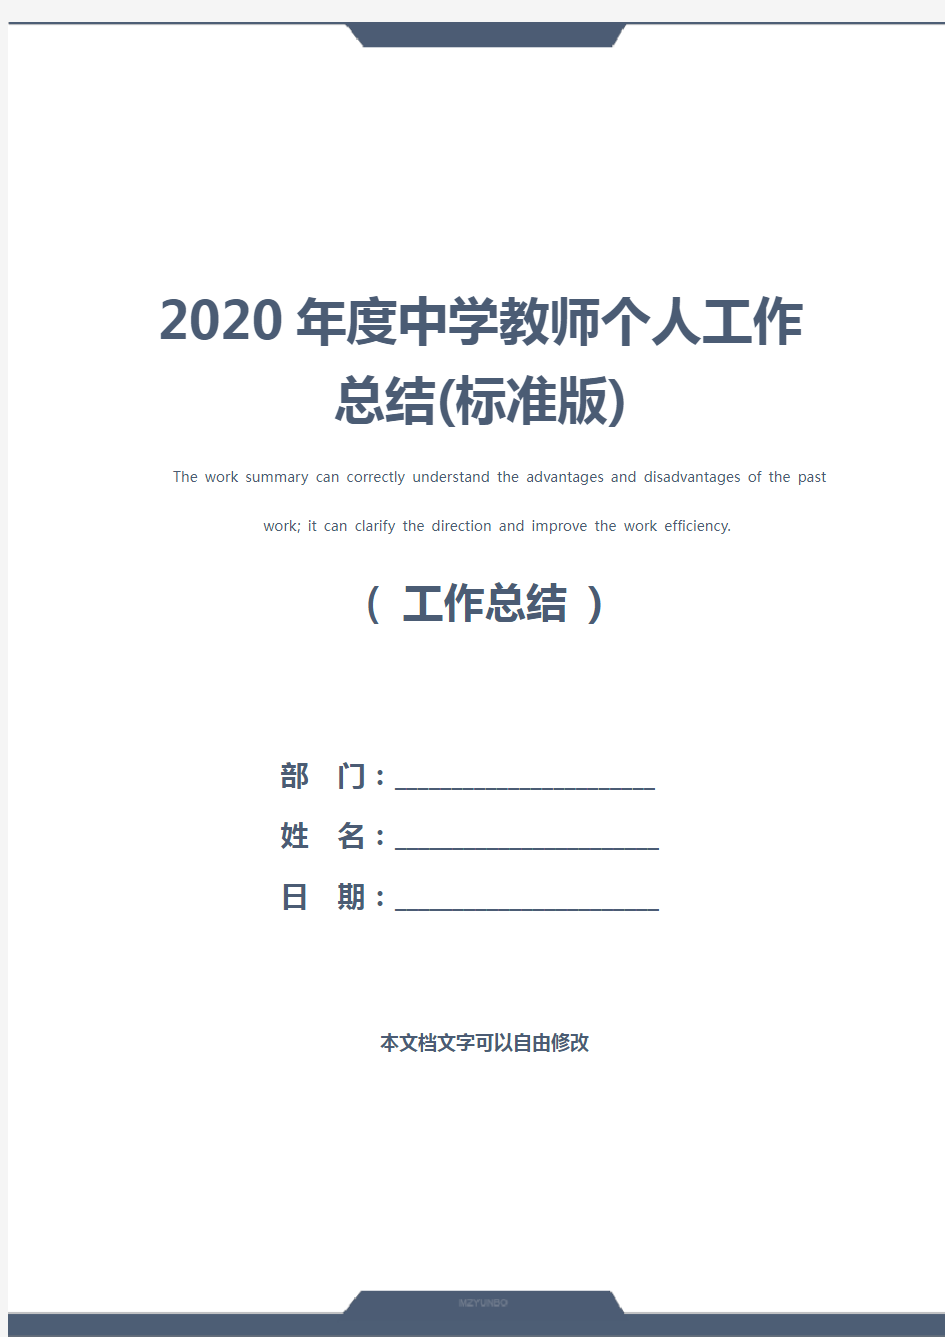 2020年度中学教师个人工作总结(标准版)